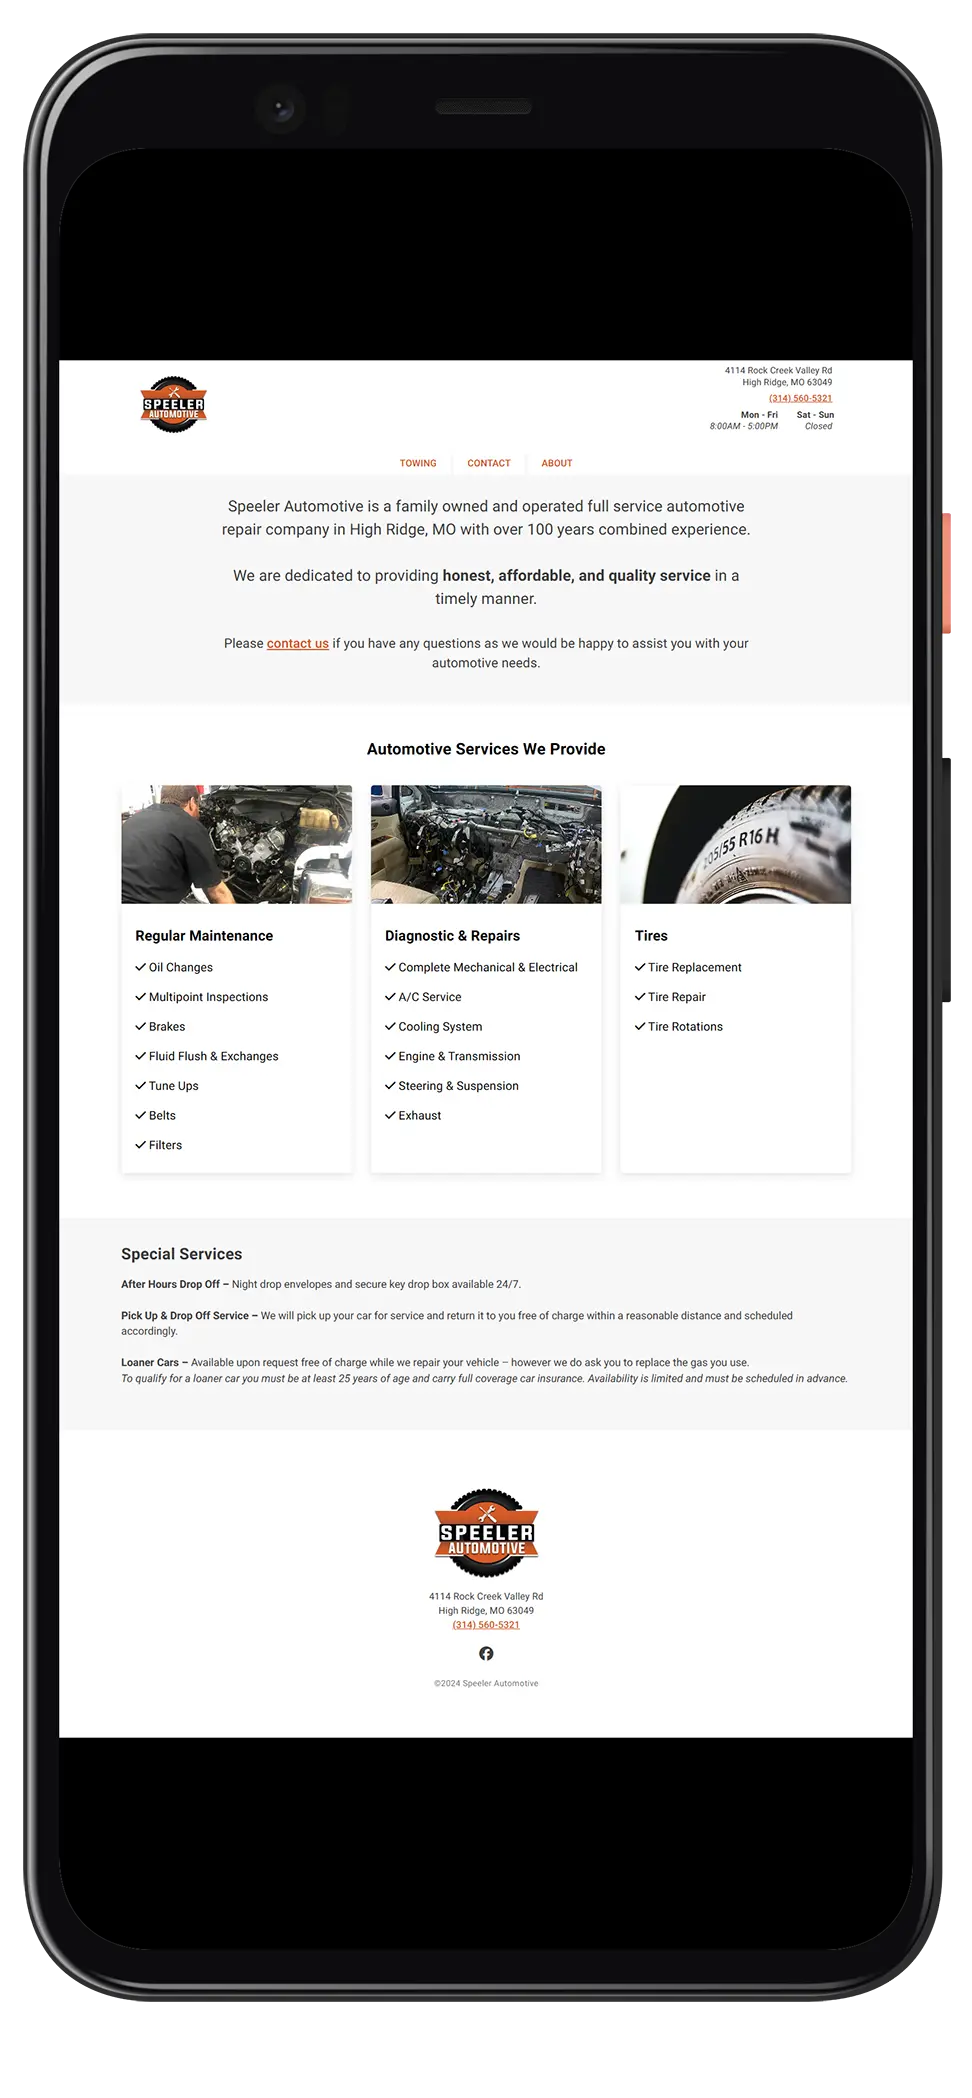 Honest Pixel Speeler Automotive website screenshot